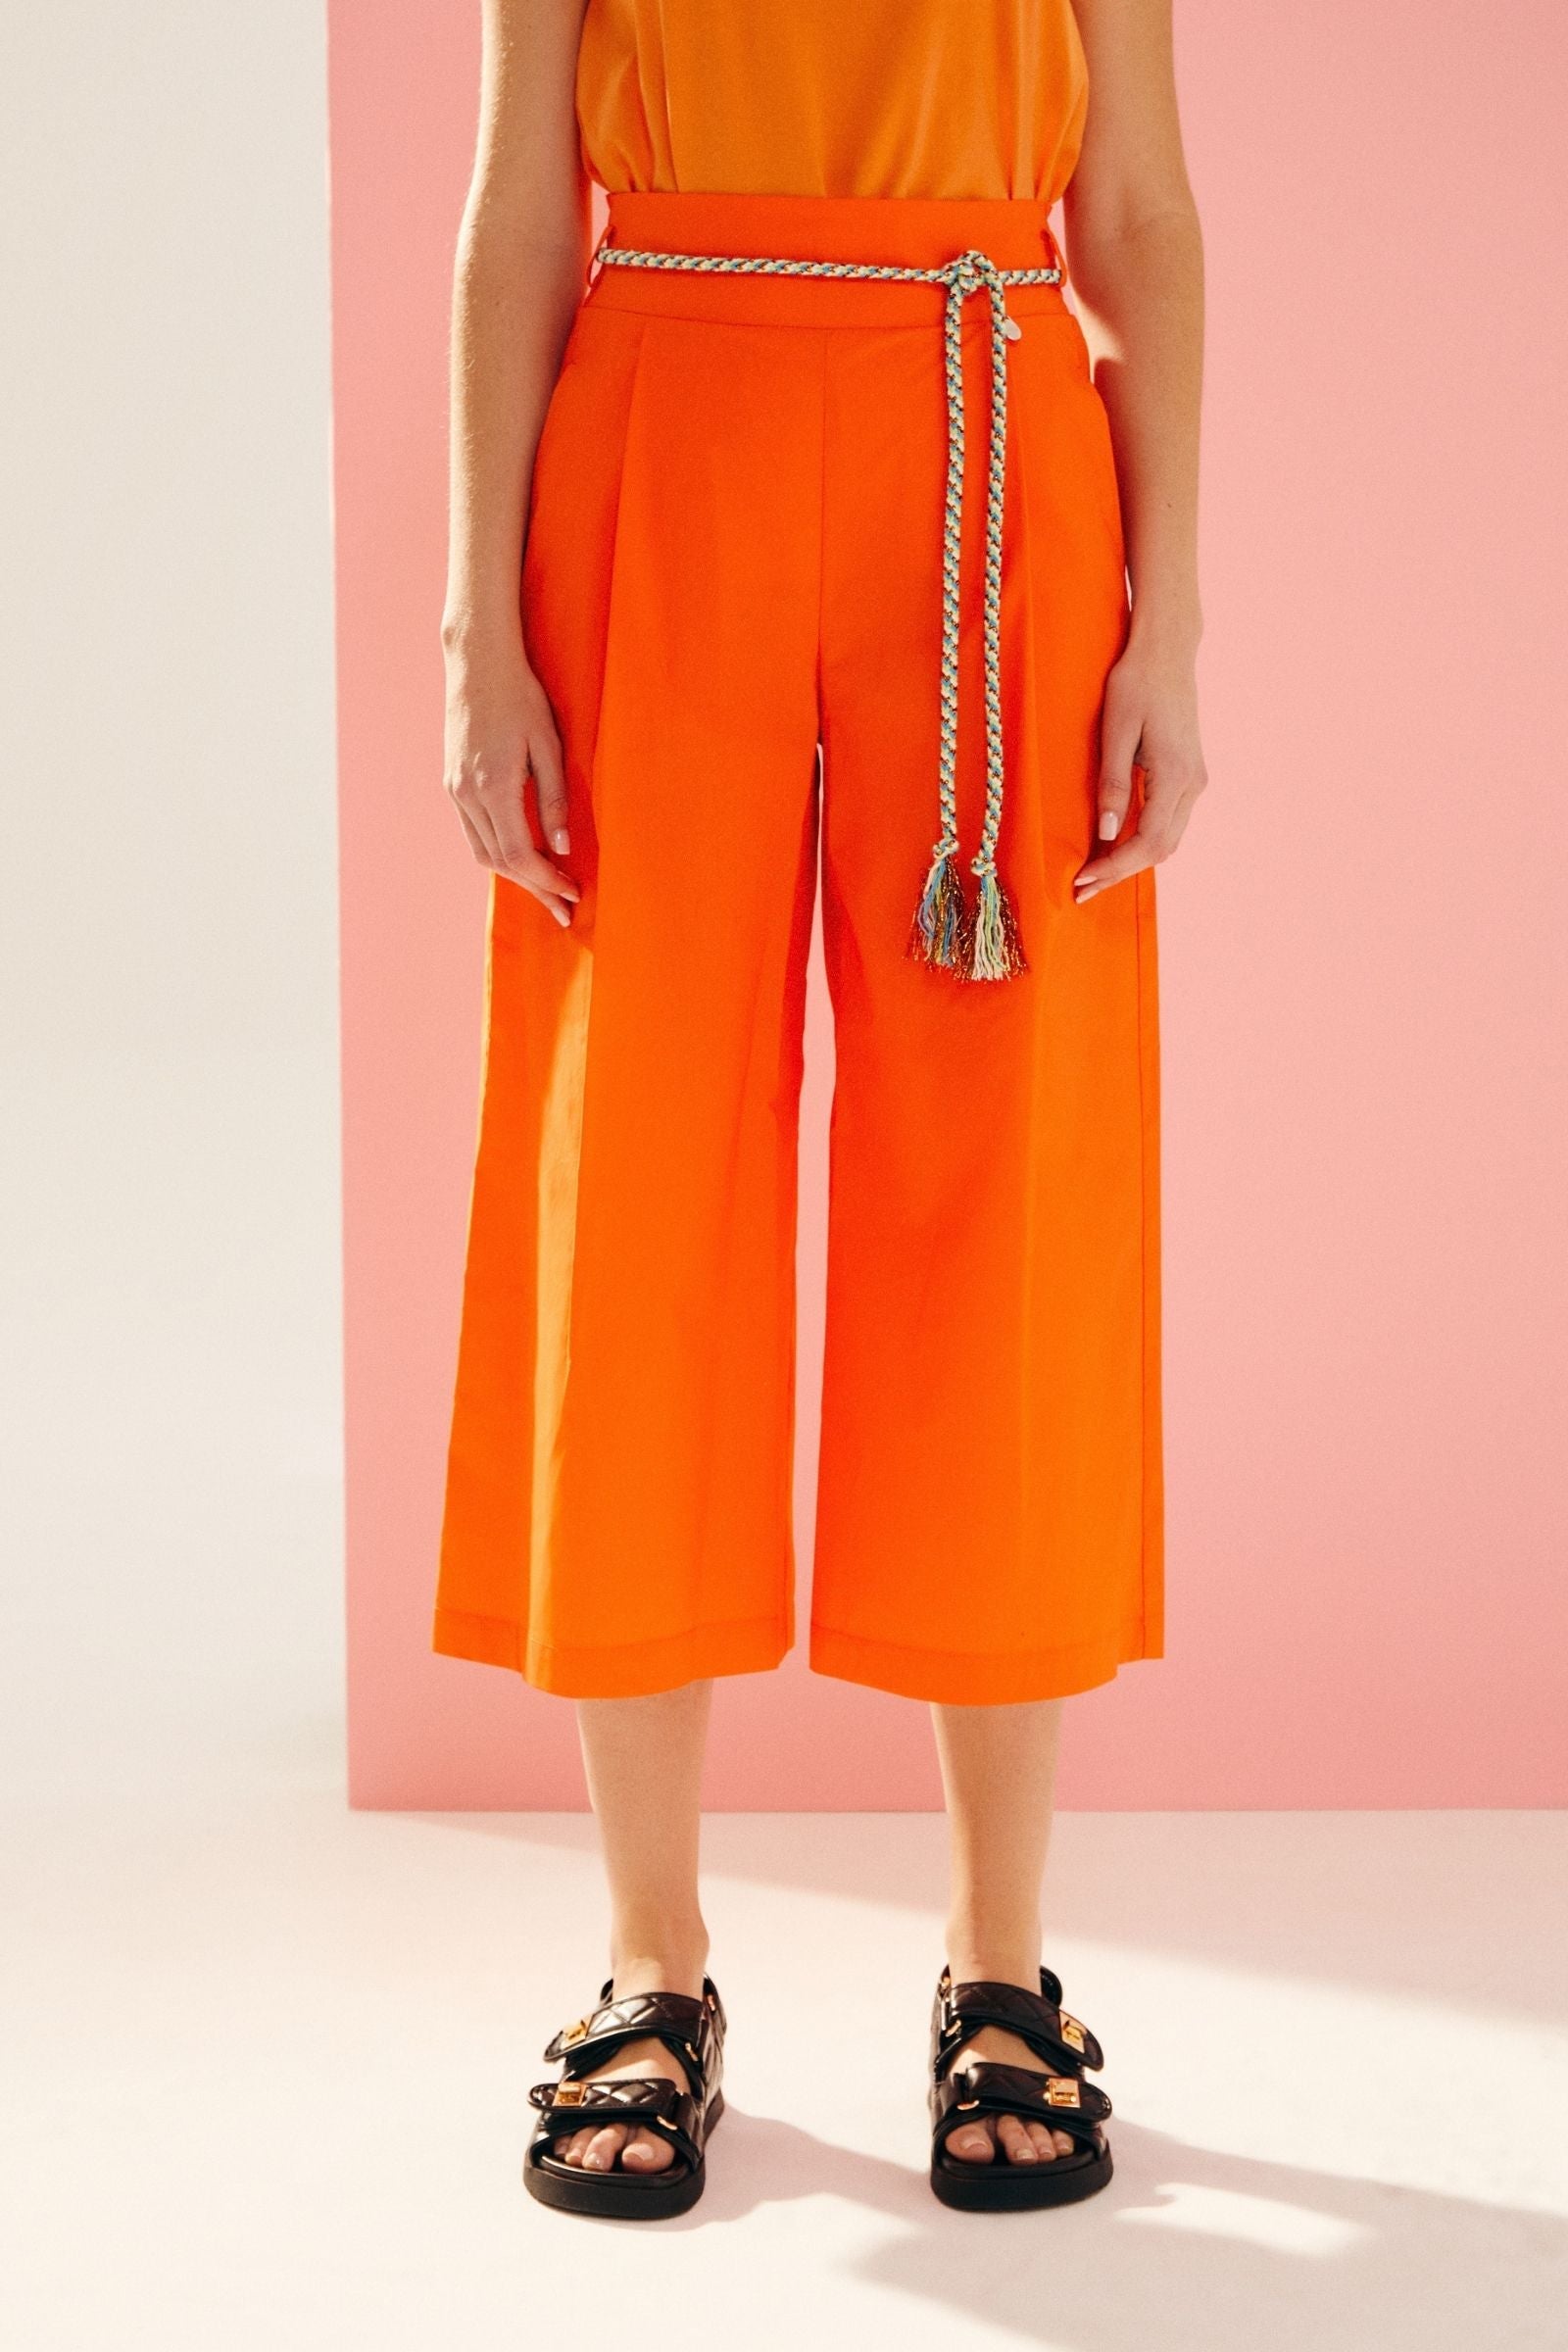 Pantalón naranja flúor ancho pinzas con cinturón de Lolitas - lolitasyl.com